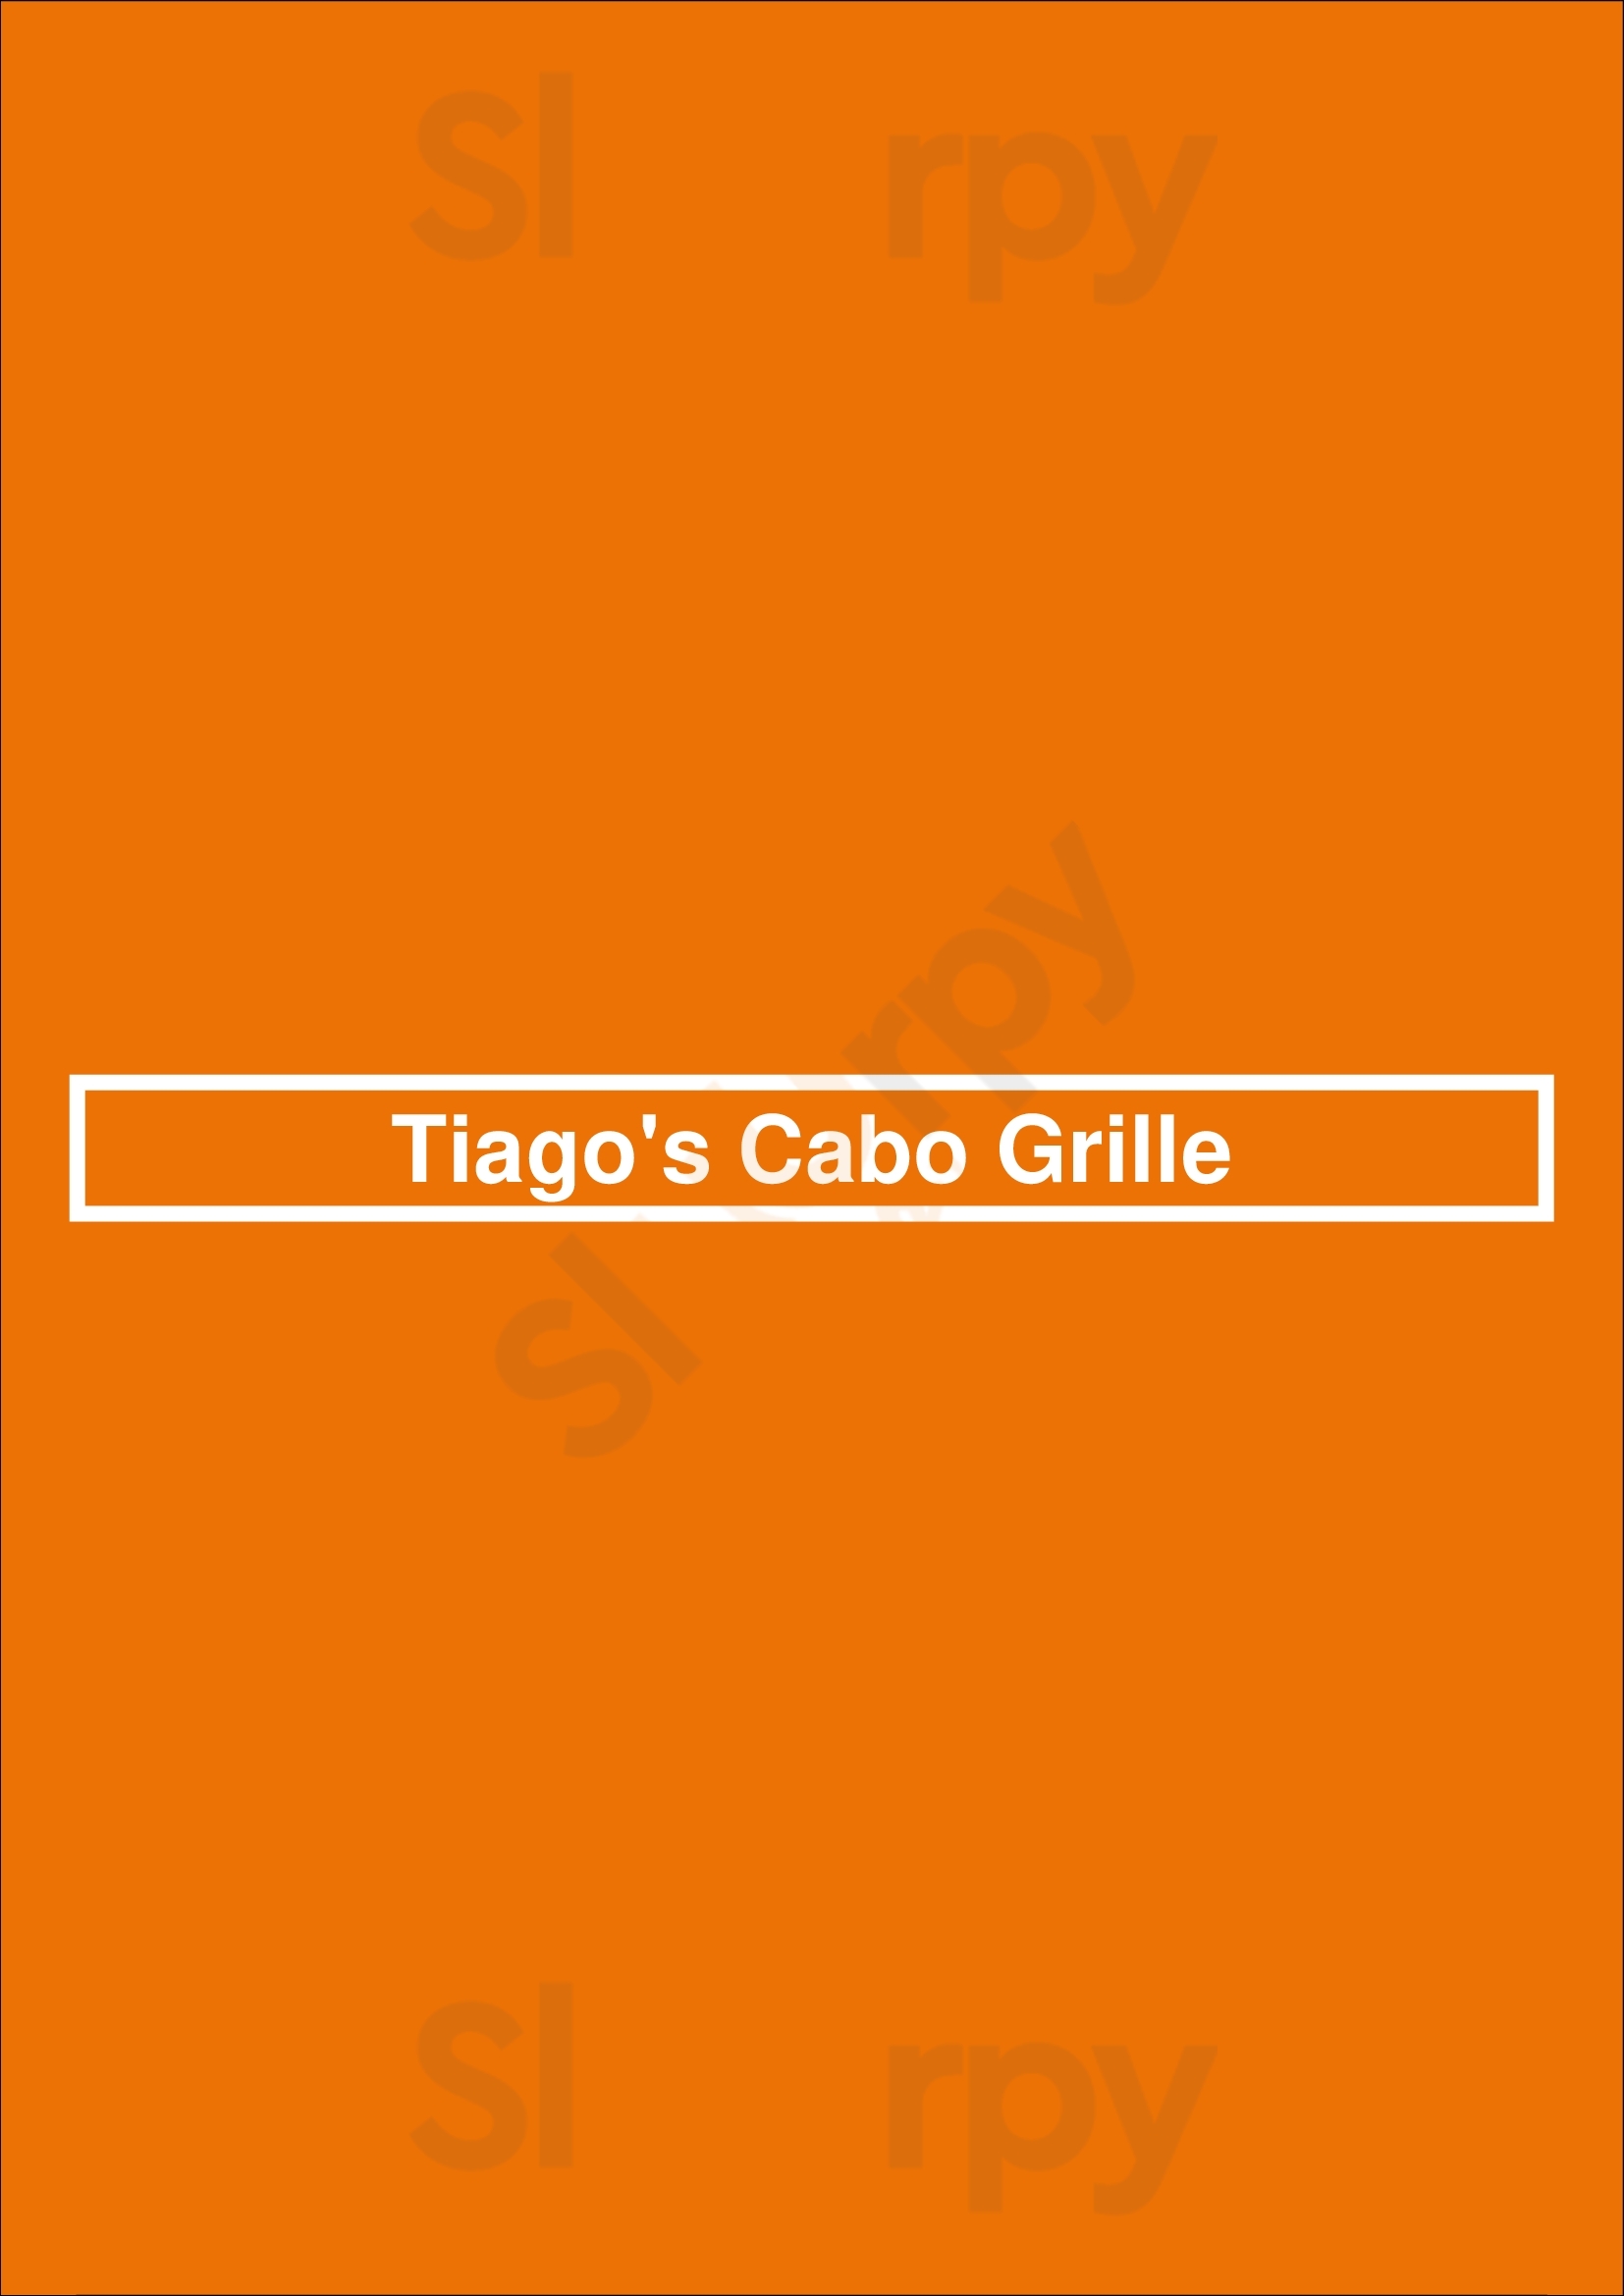 Tiago's Cabo Grille San Antonio Menu - 1